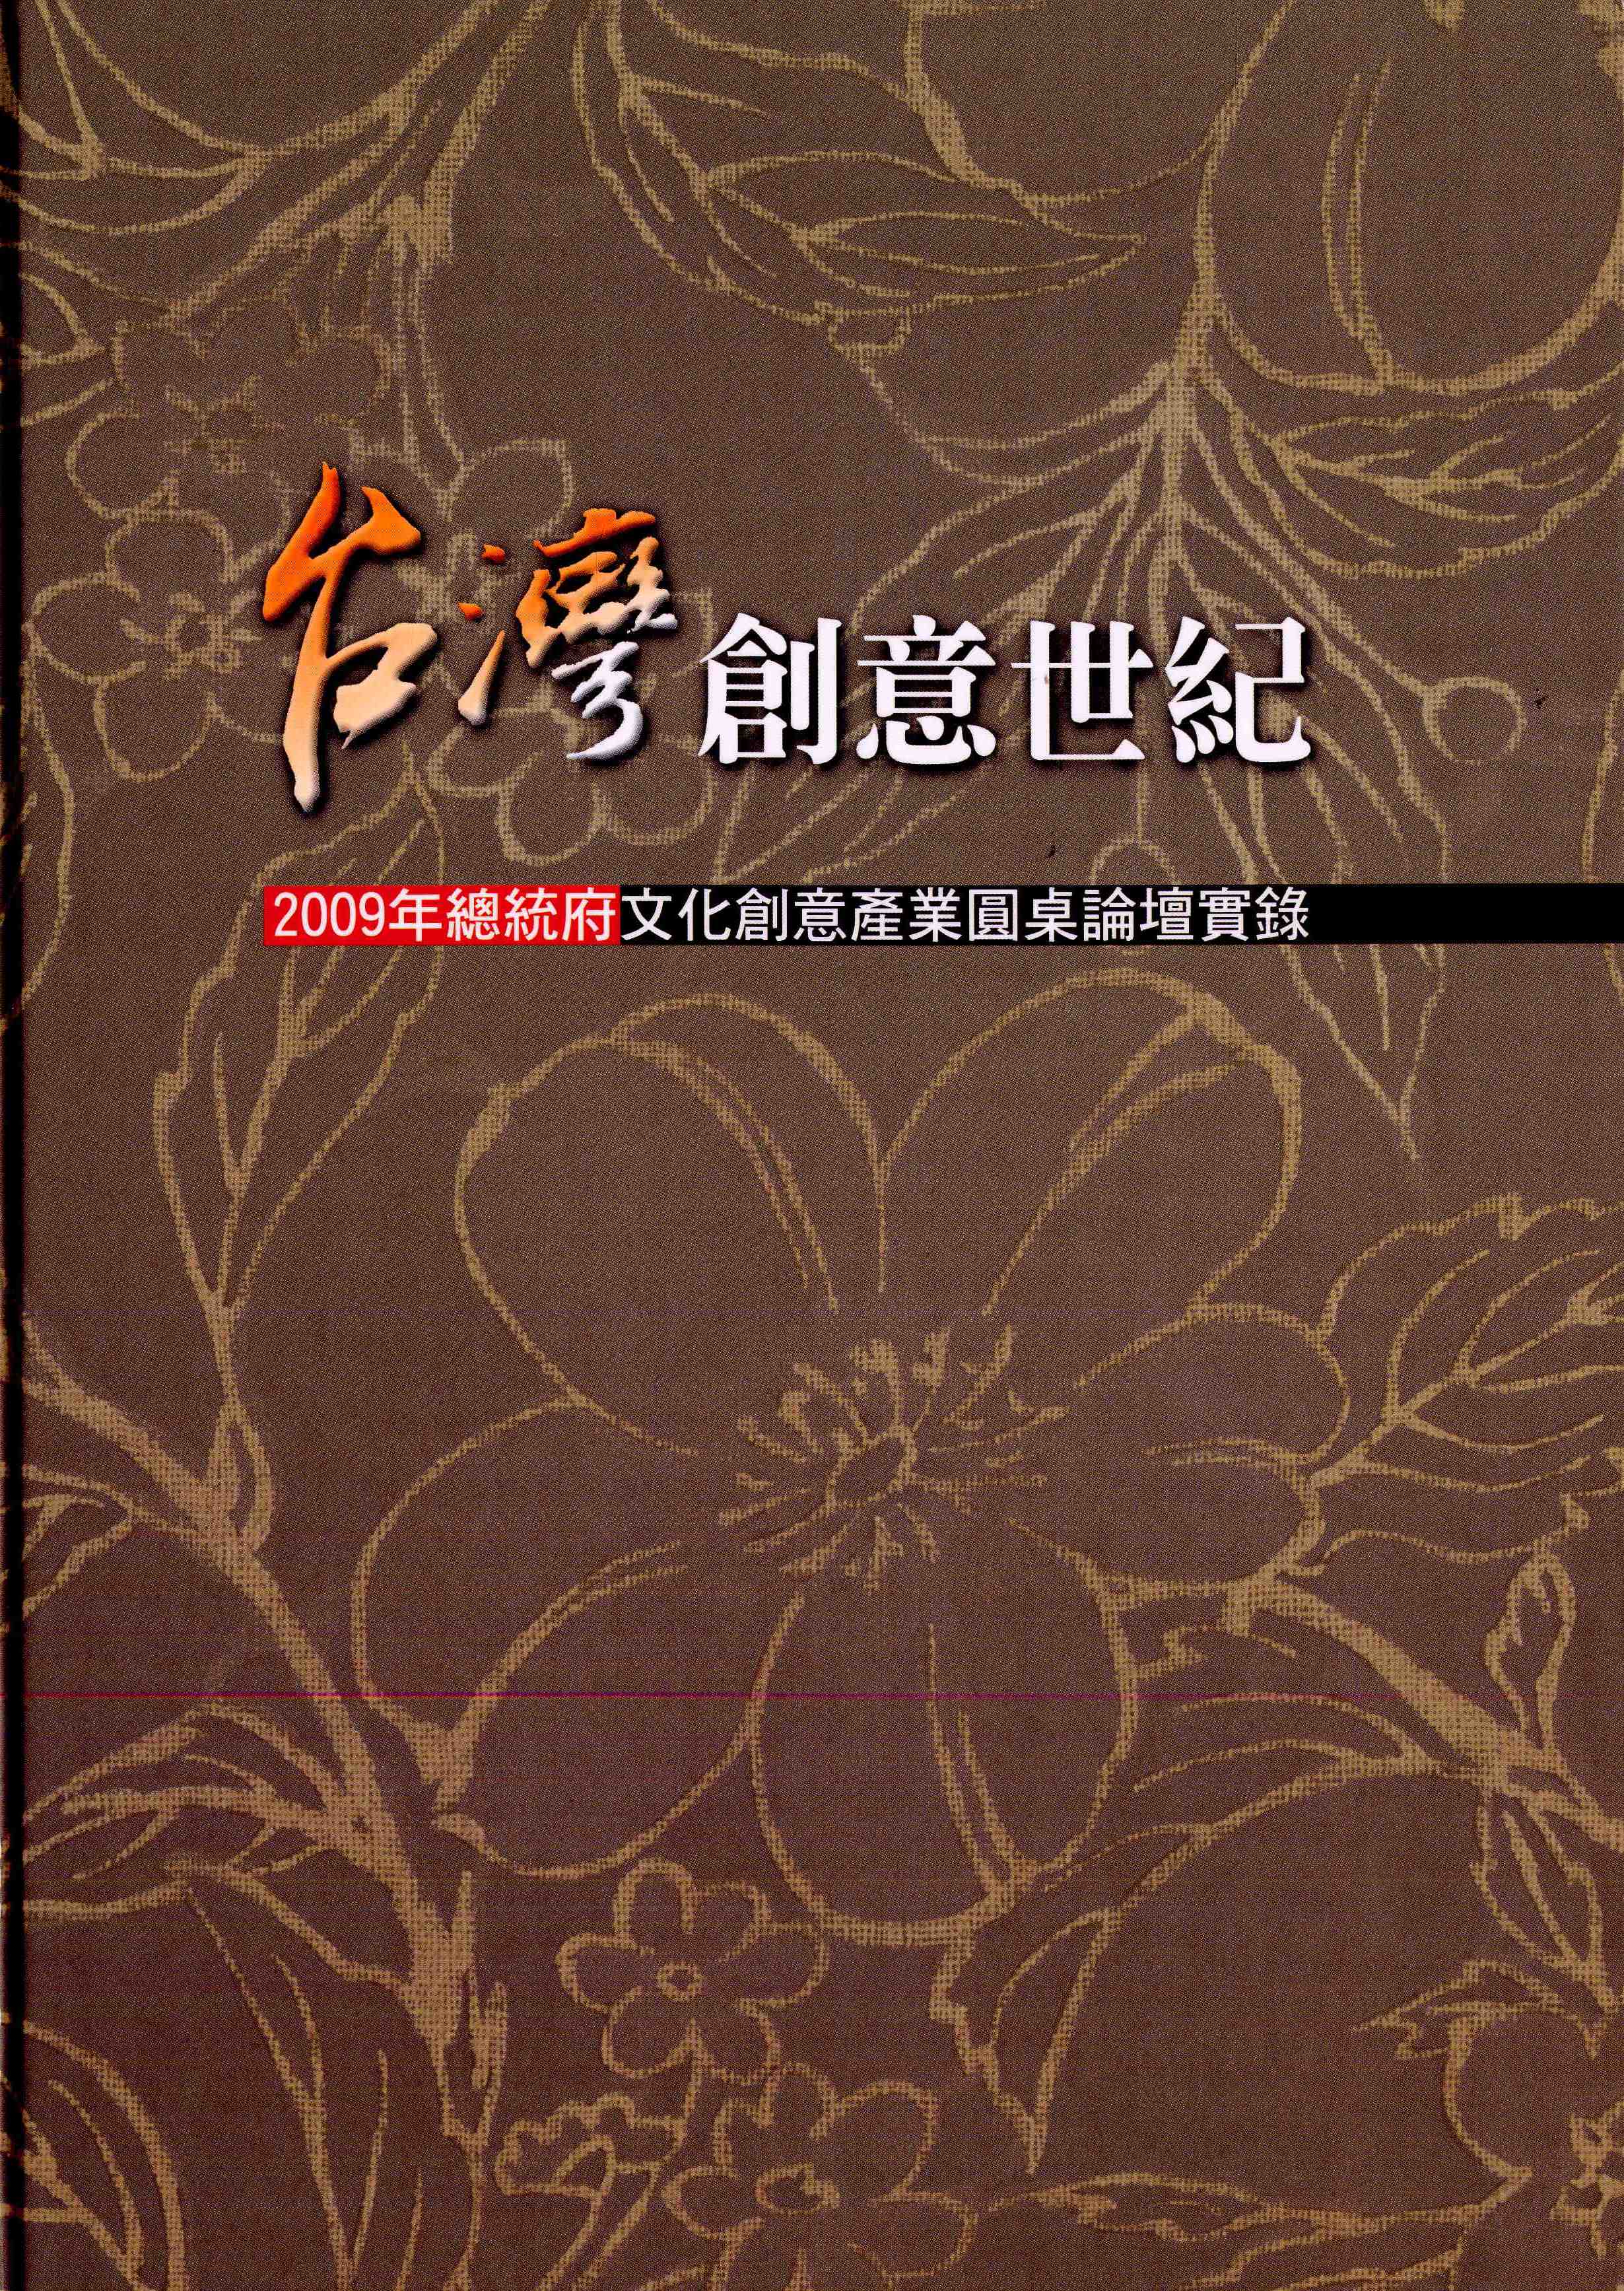 台灣創意世紀－2009年總統府文化創意產業圓桌論壇實錄